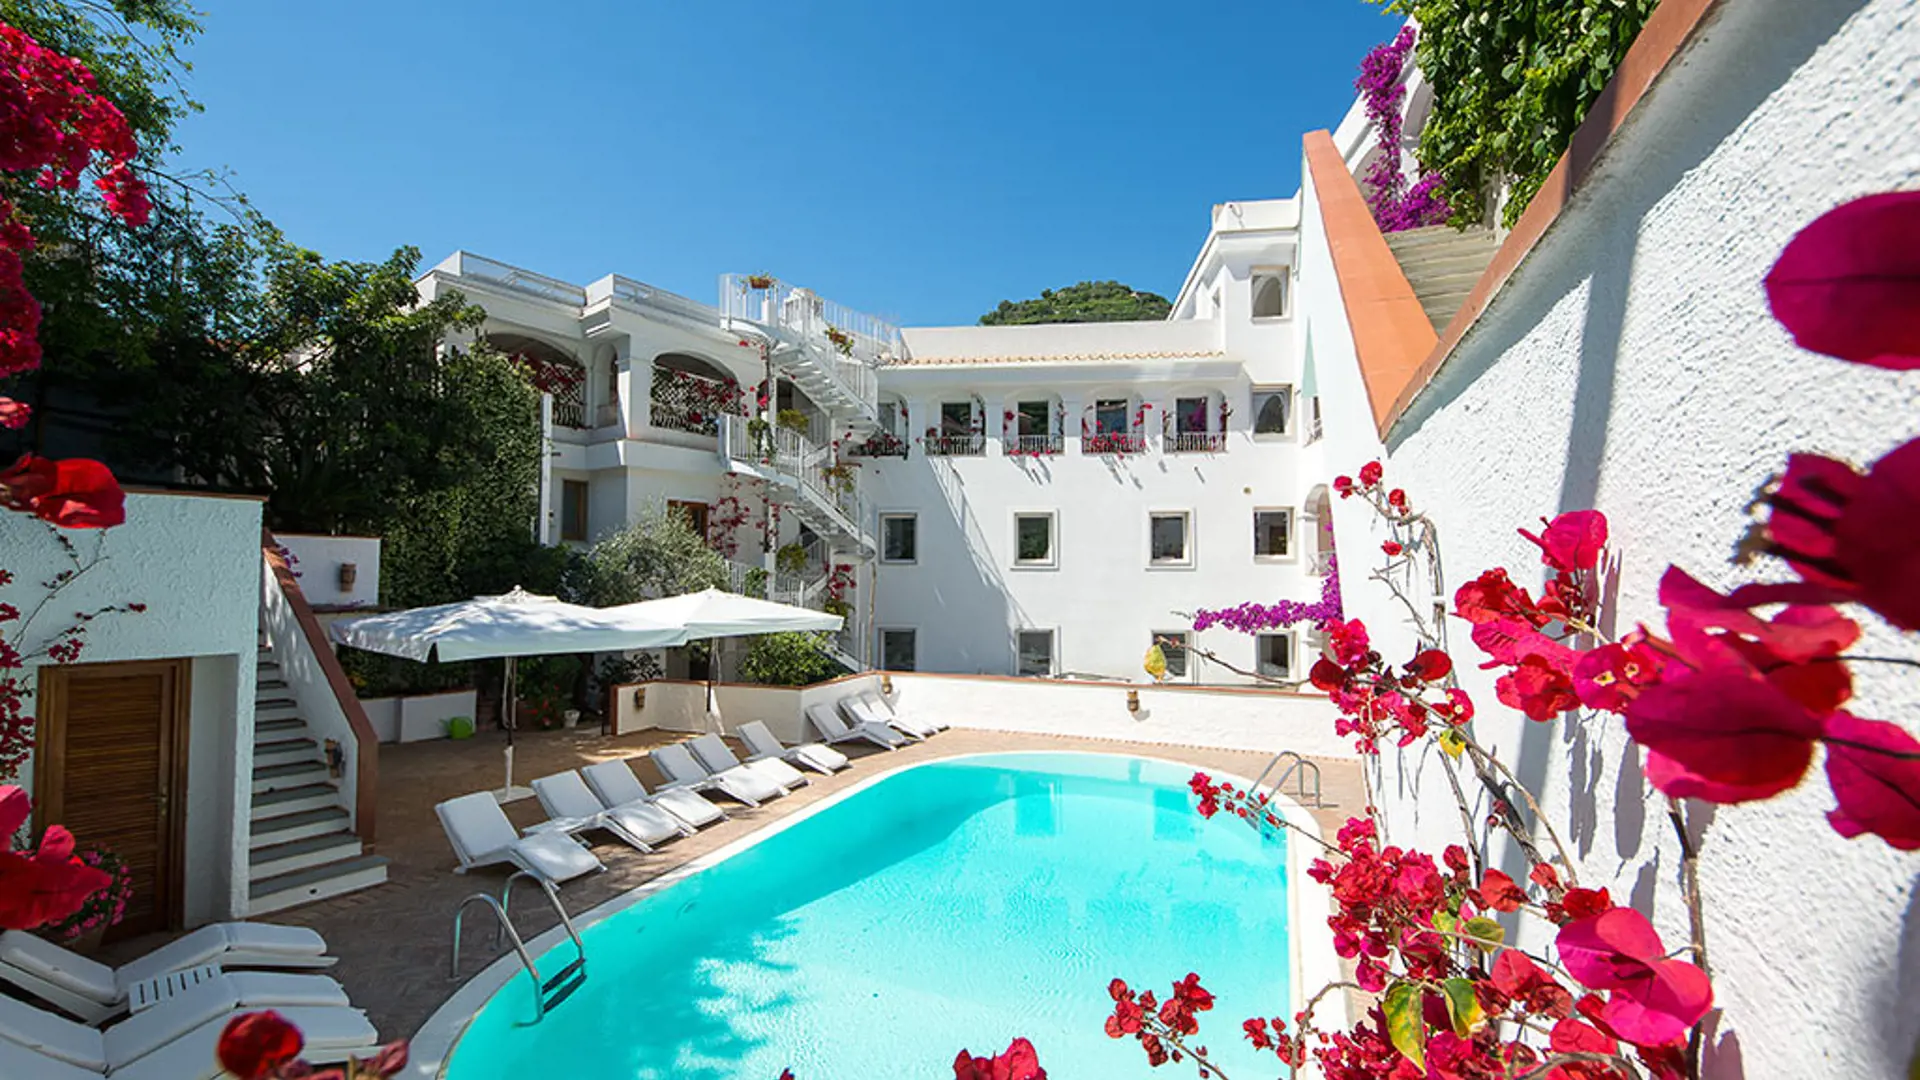 Hotel Villa Romana har pool og en fin beliggenhed midt i Minori